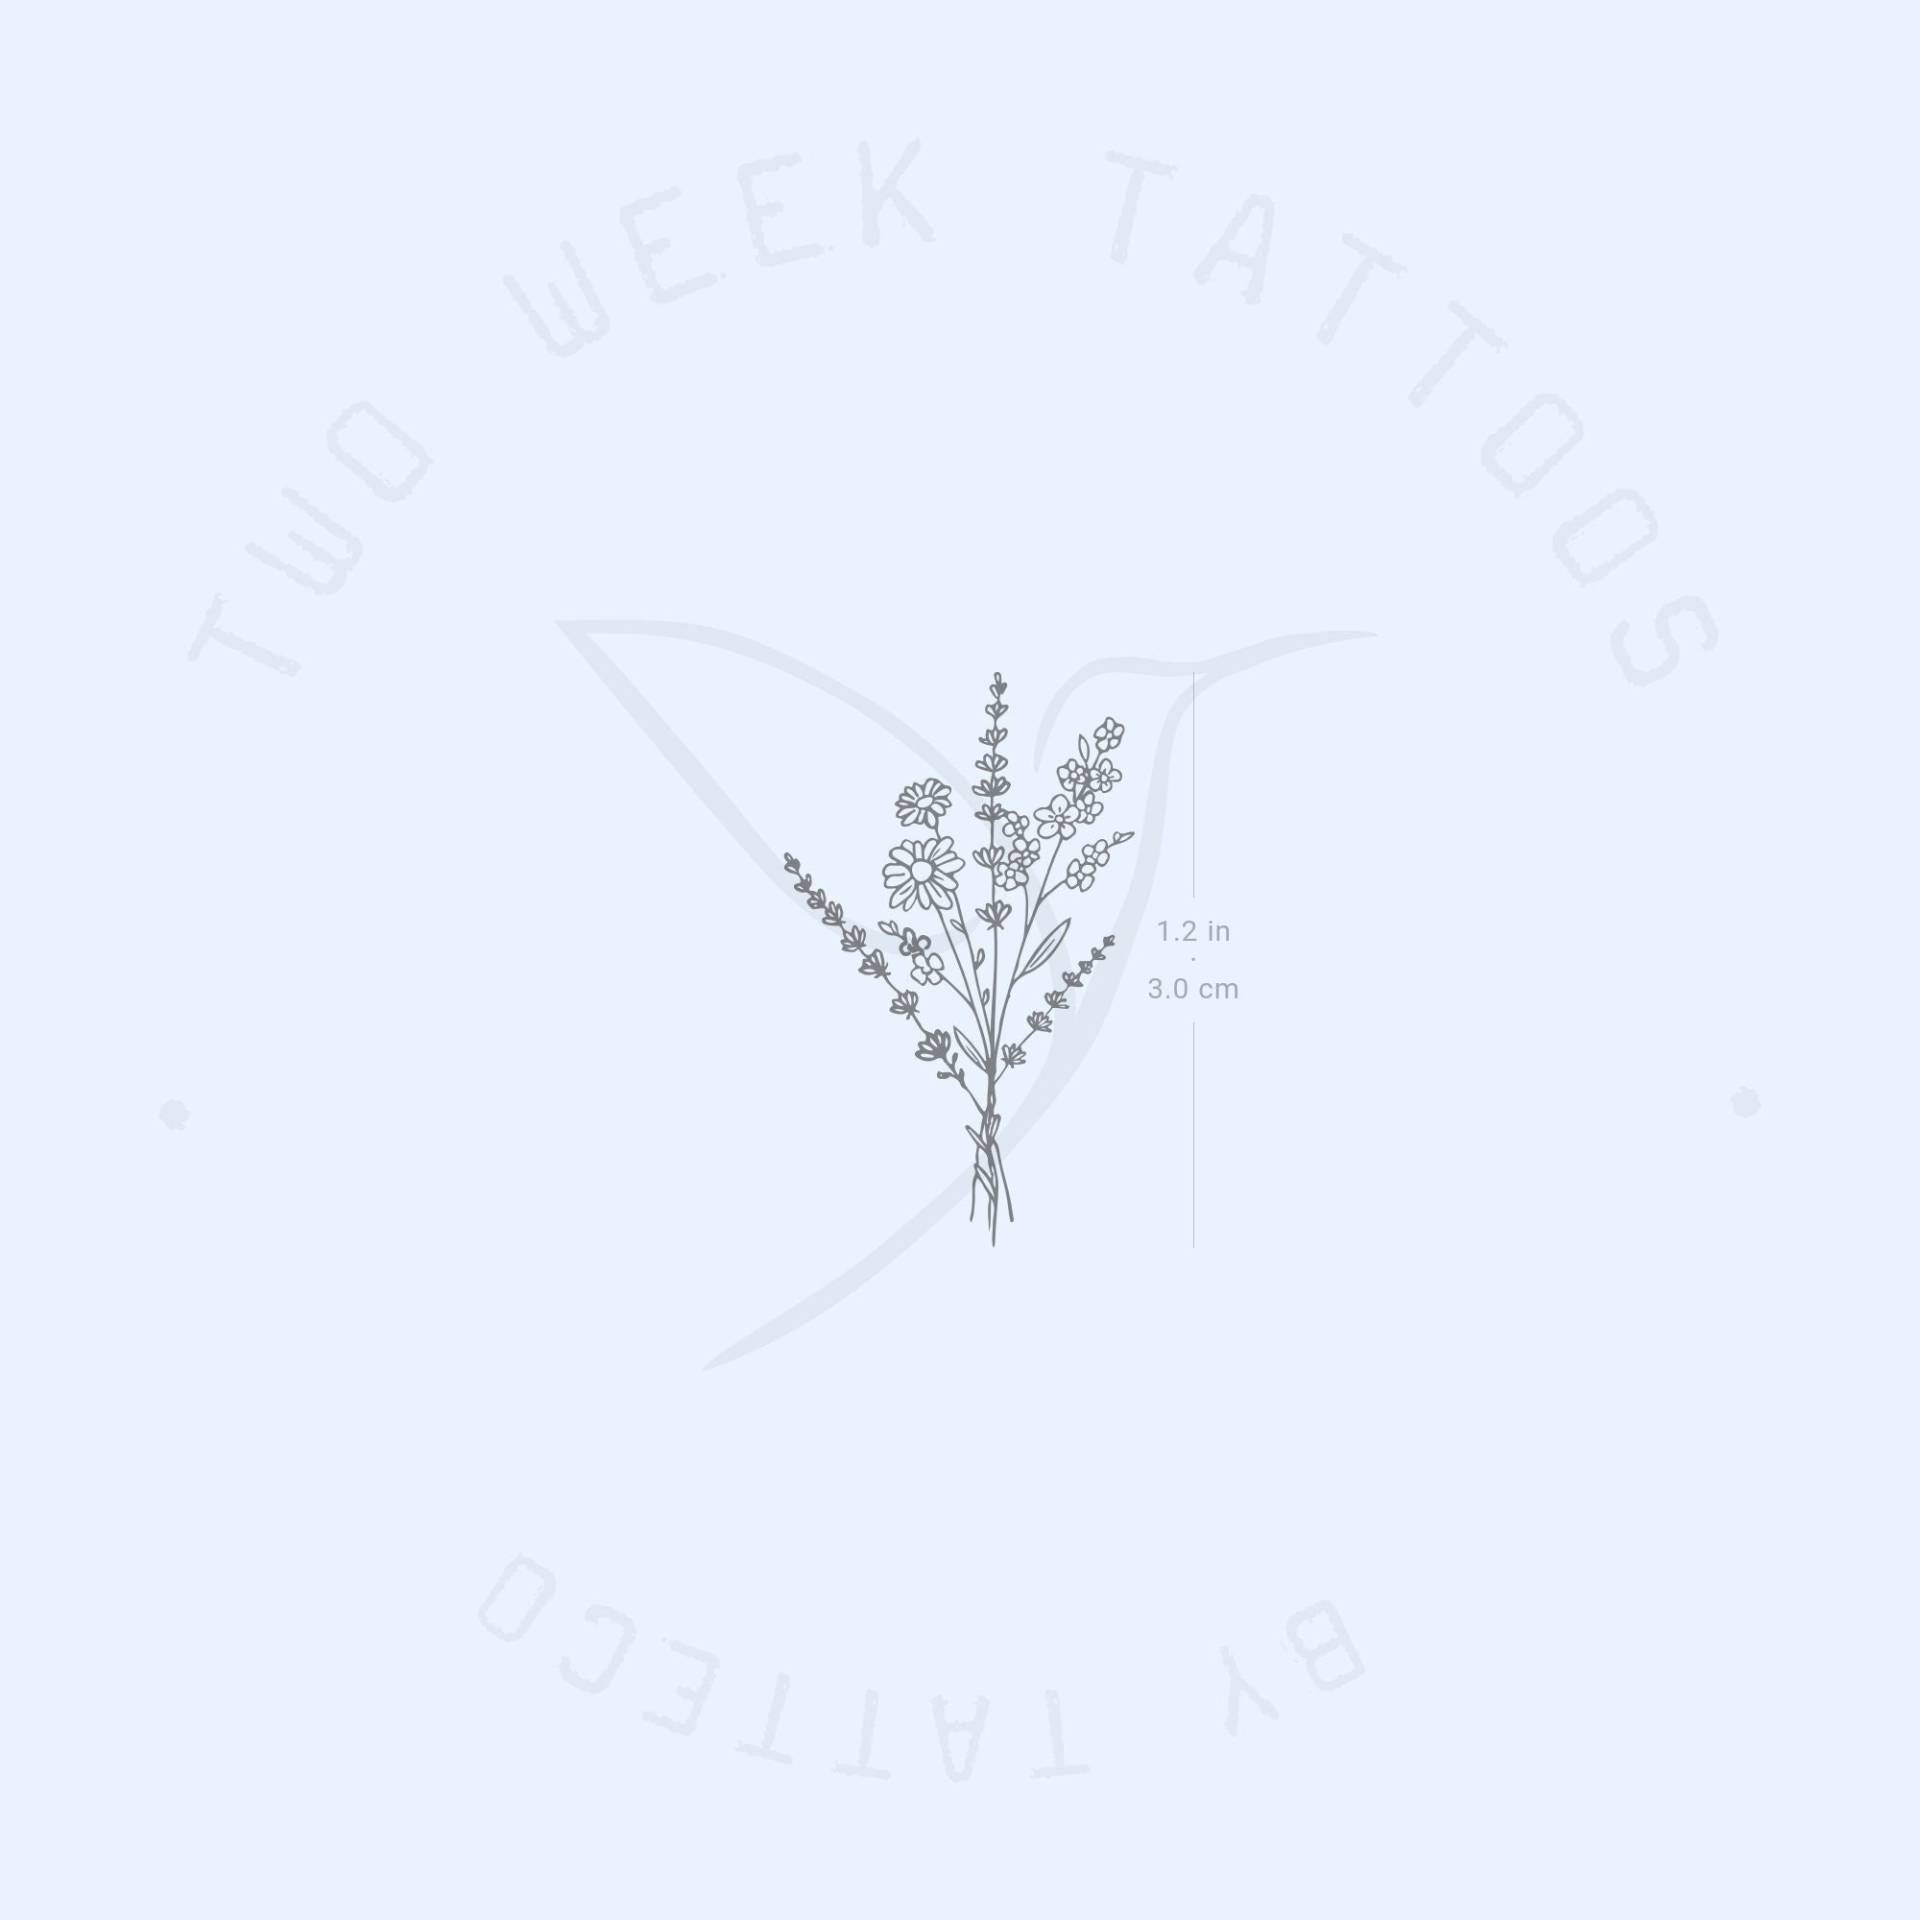 Kleiner Blumenstrauß Semi-Permanent Tattoo | 2Er Set von Etsy - twoweektattoos